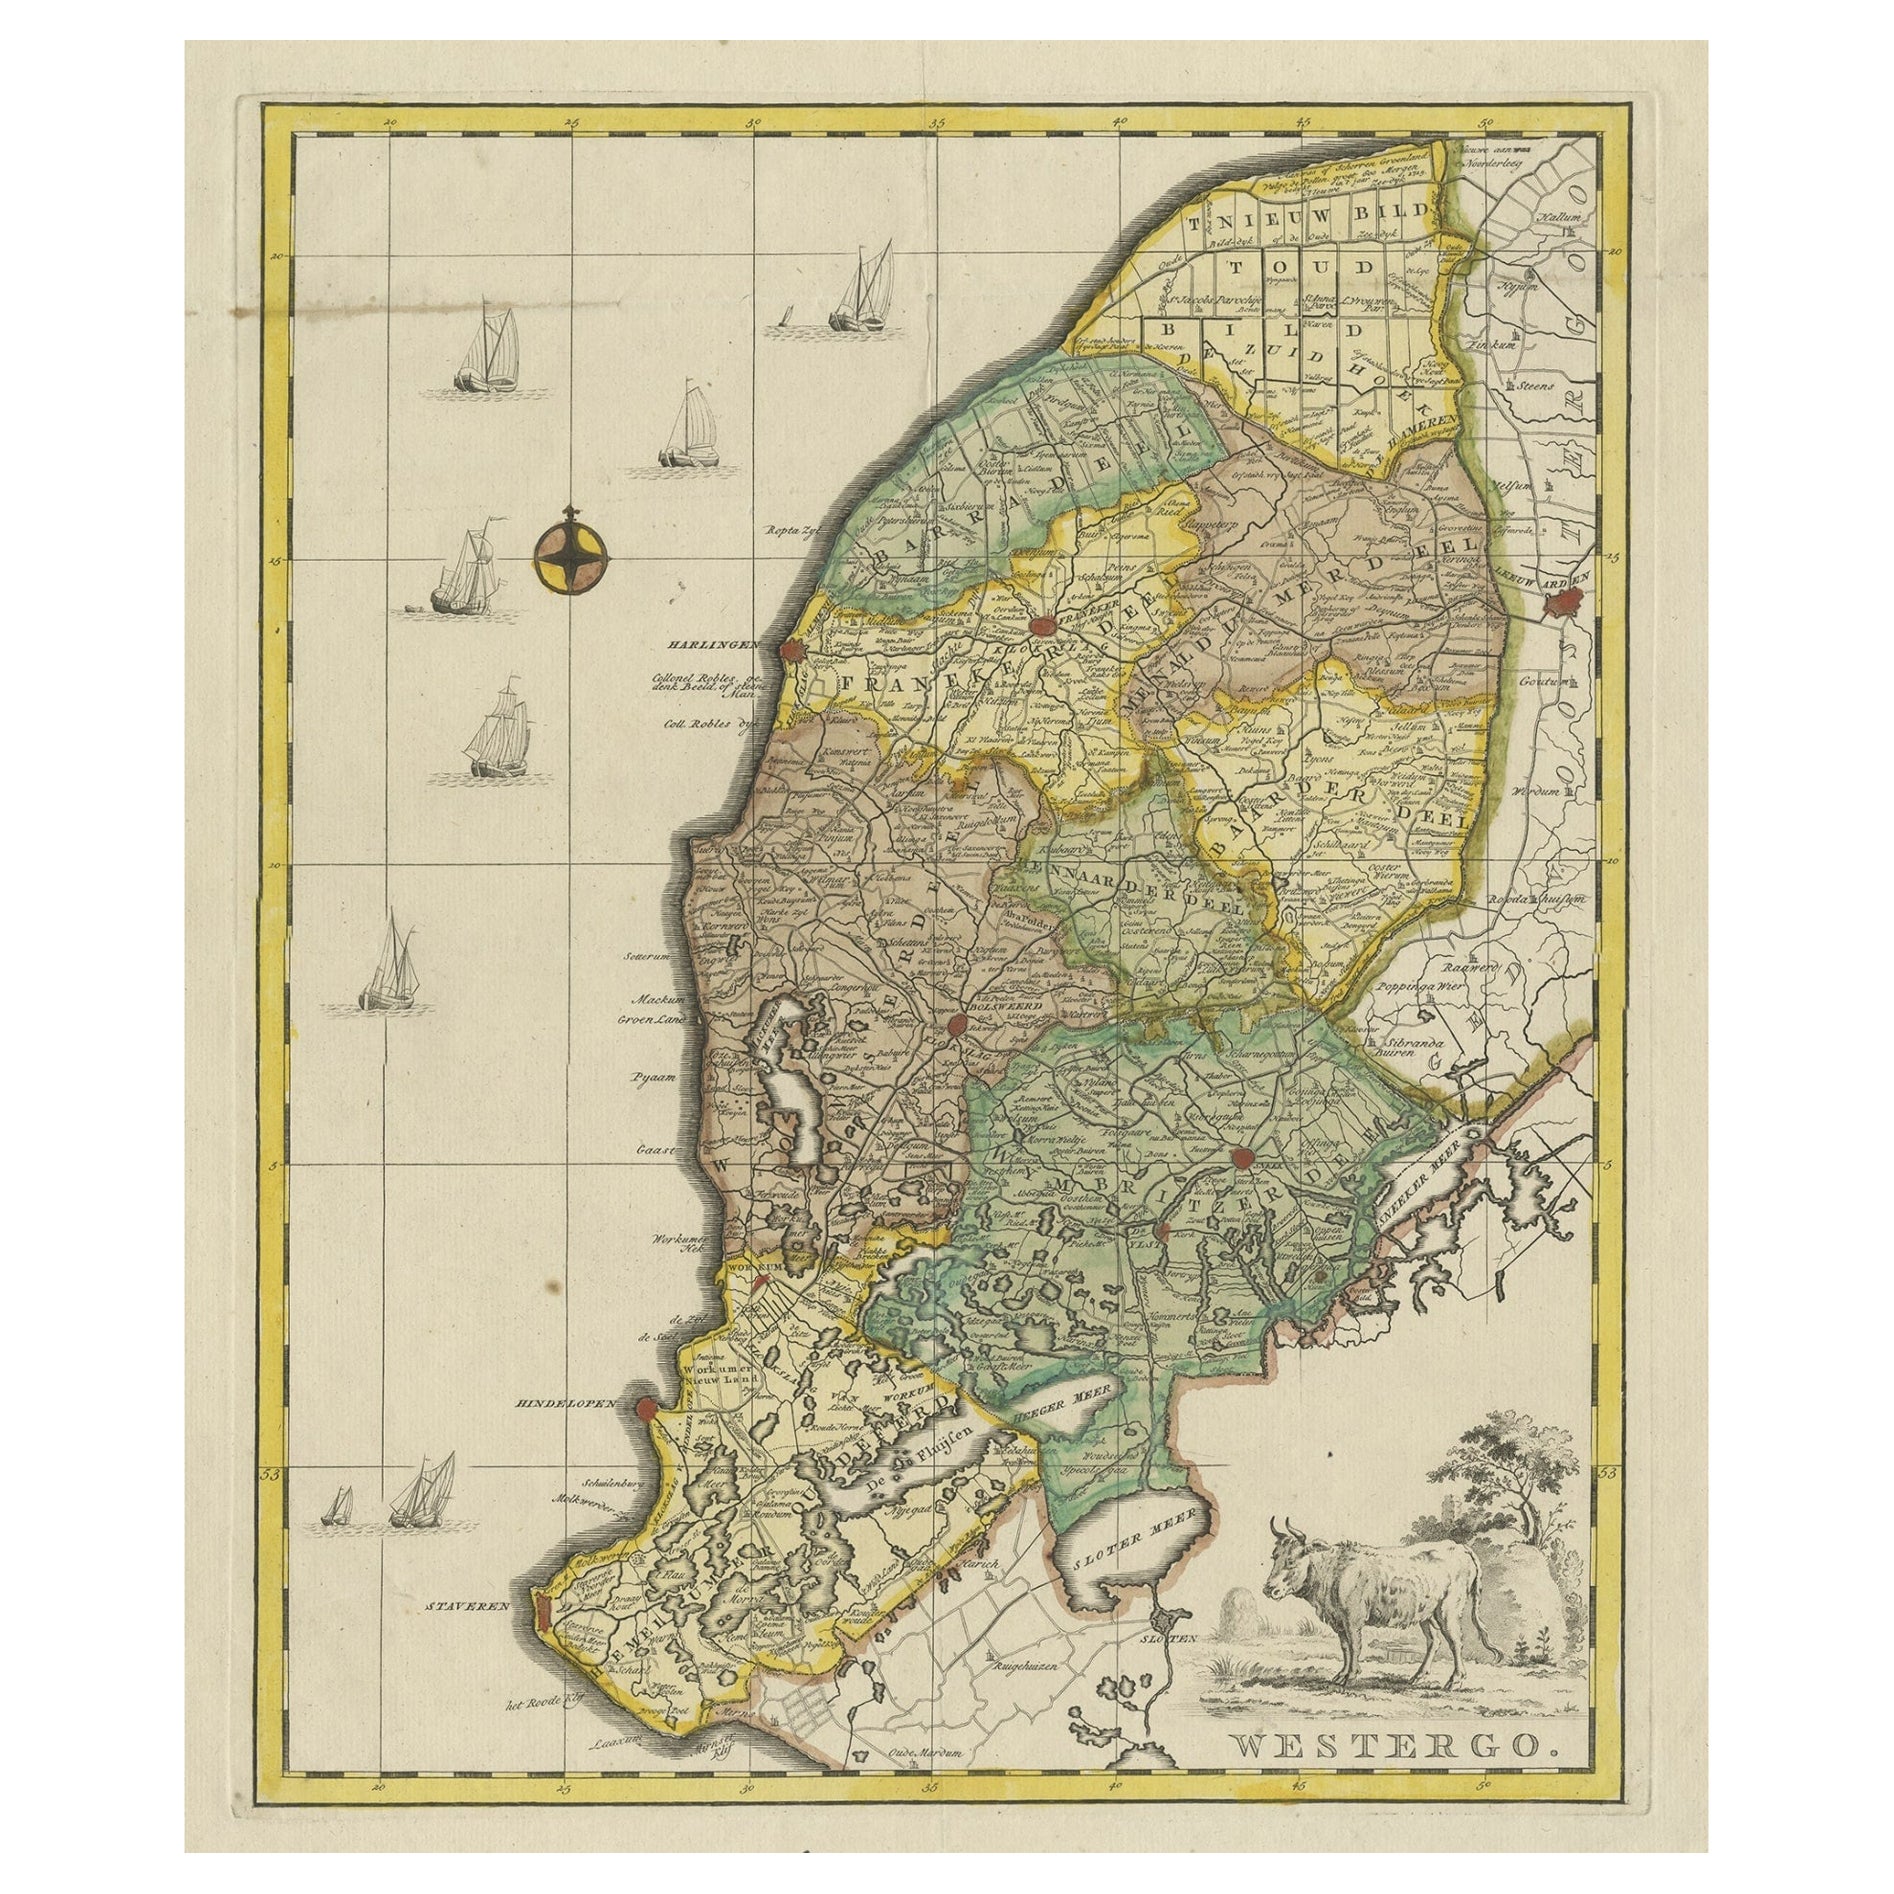 Gravure originale en cuivre de Westergo, faisant partie du Friesland, Pays-Bas, 1744